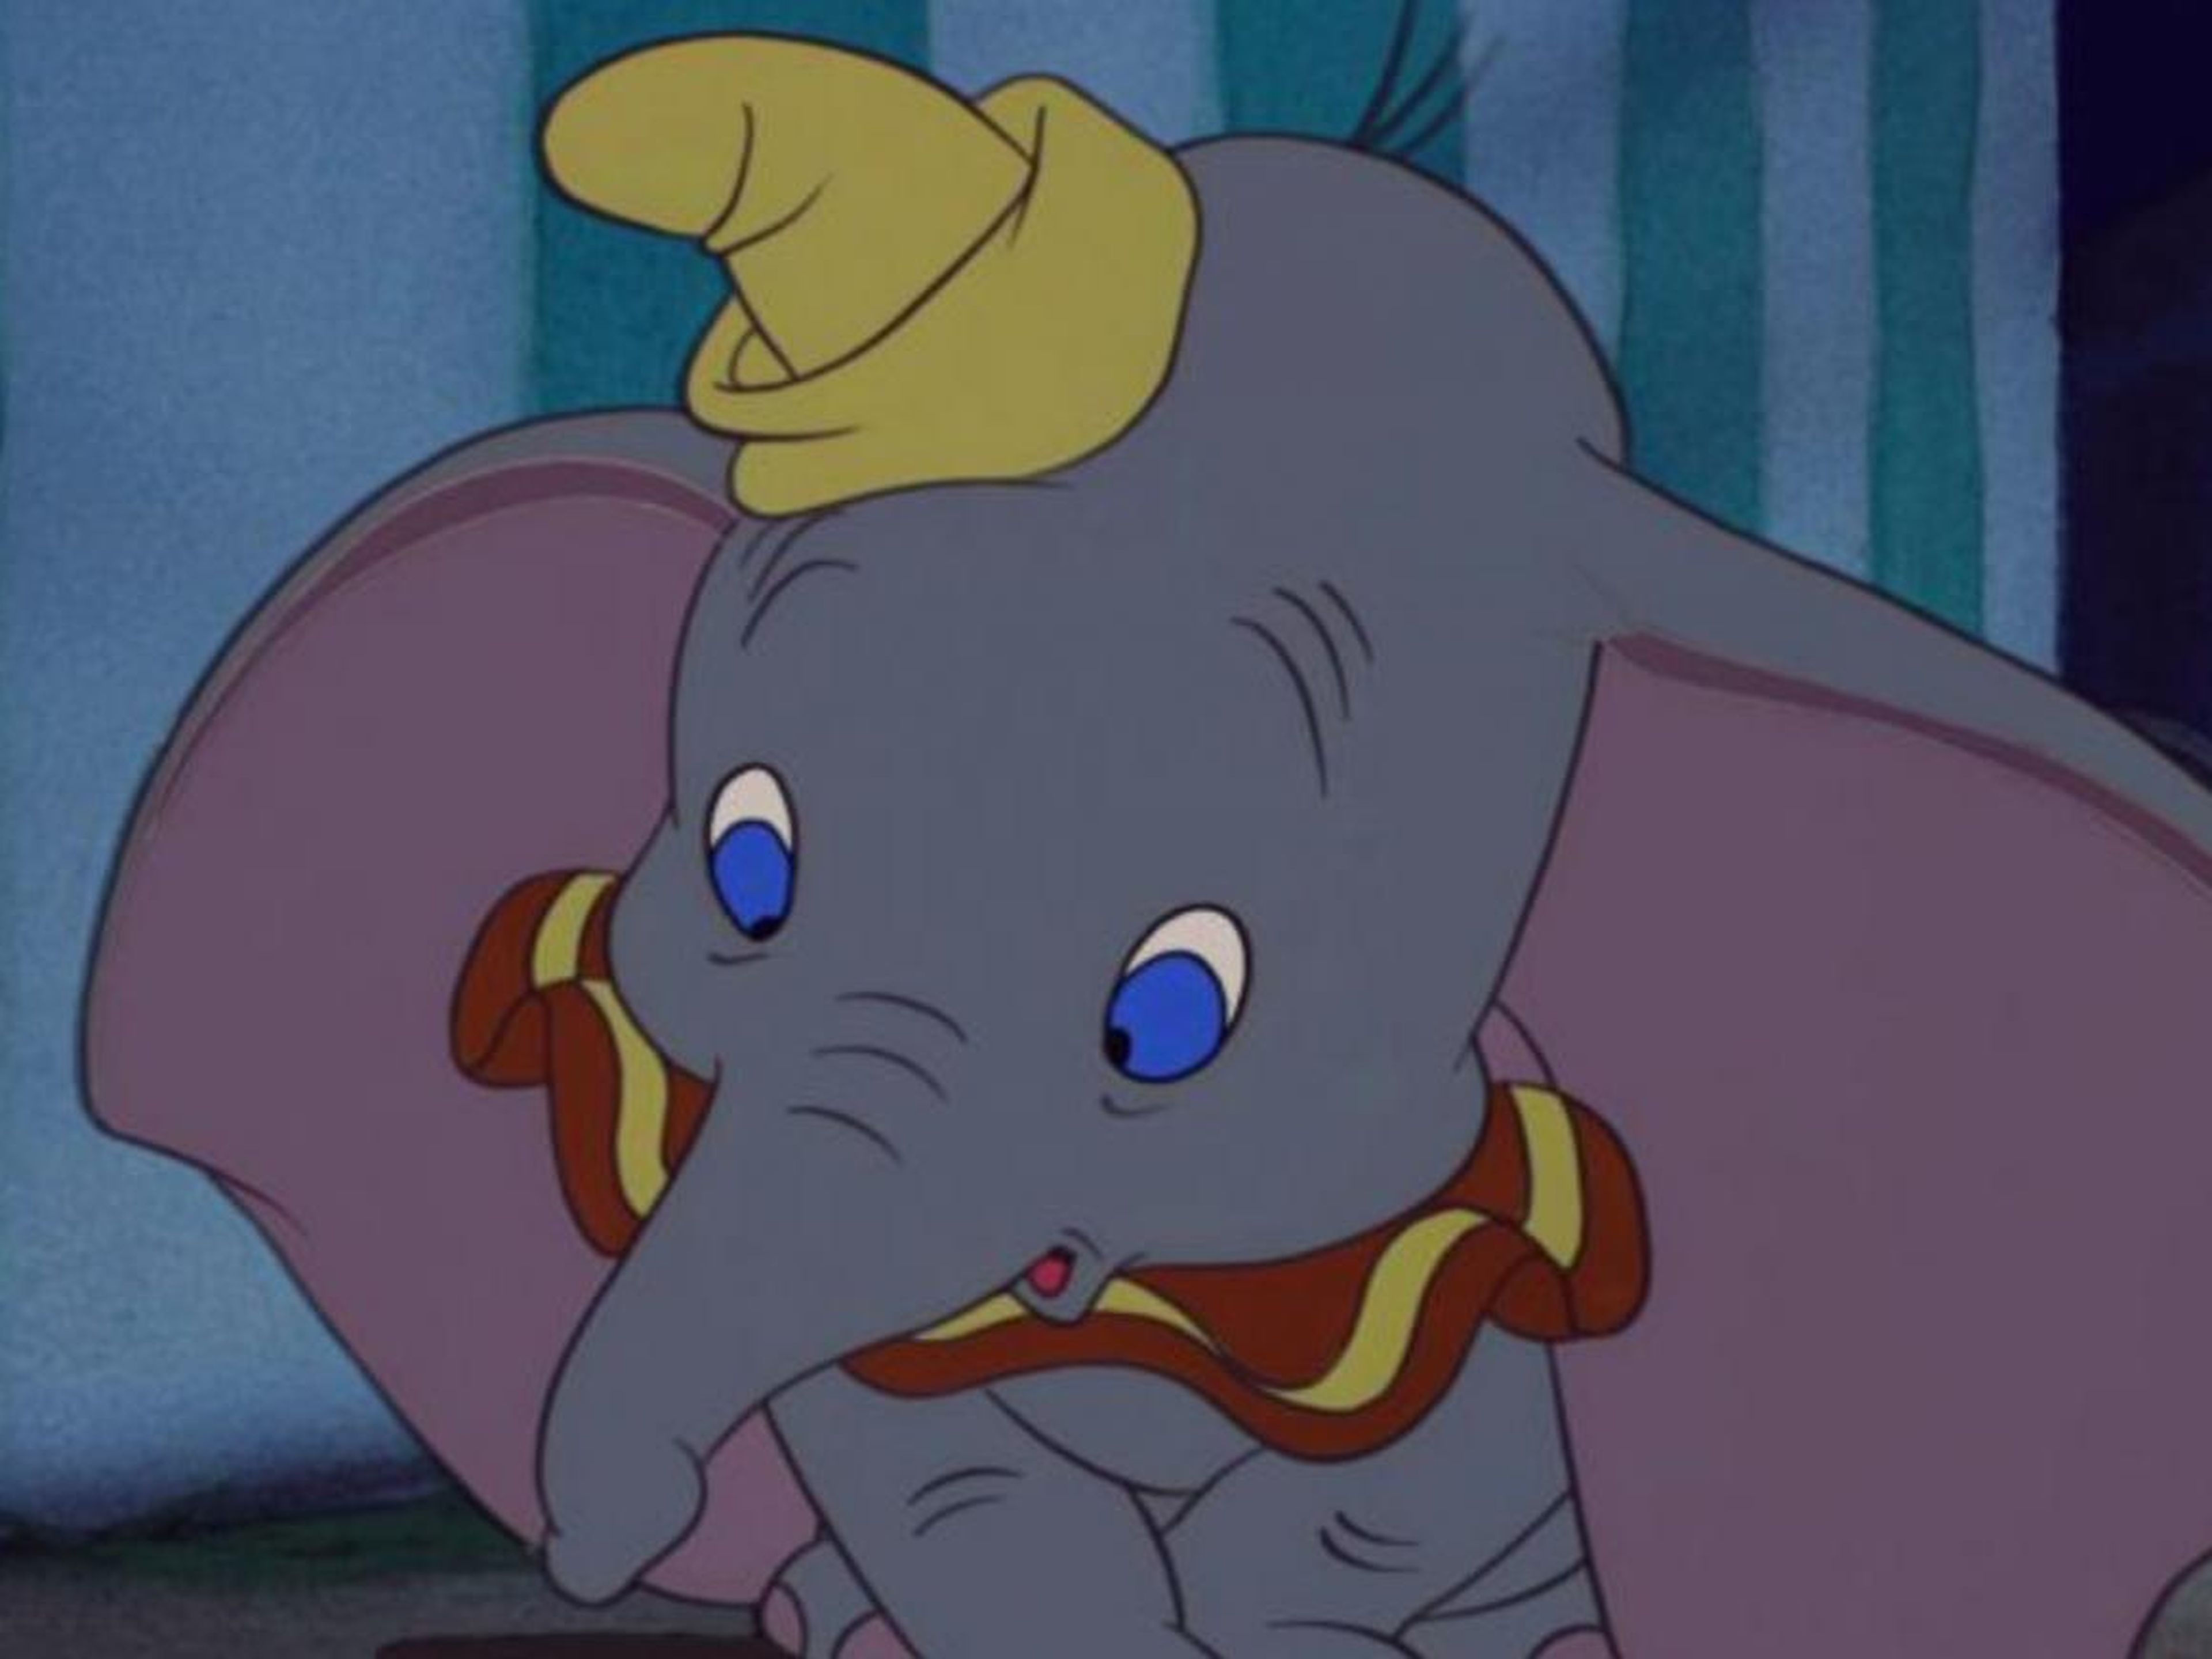 17. "Dumbo" (1941)